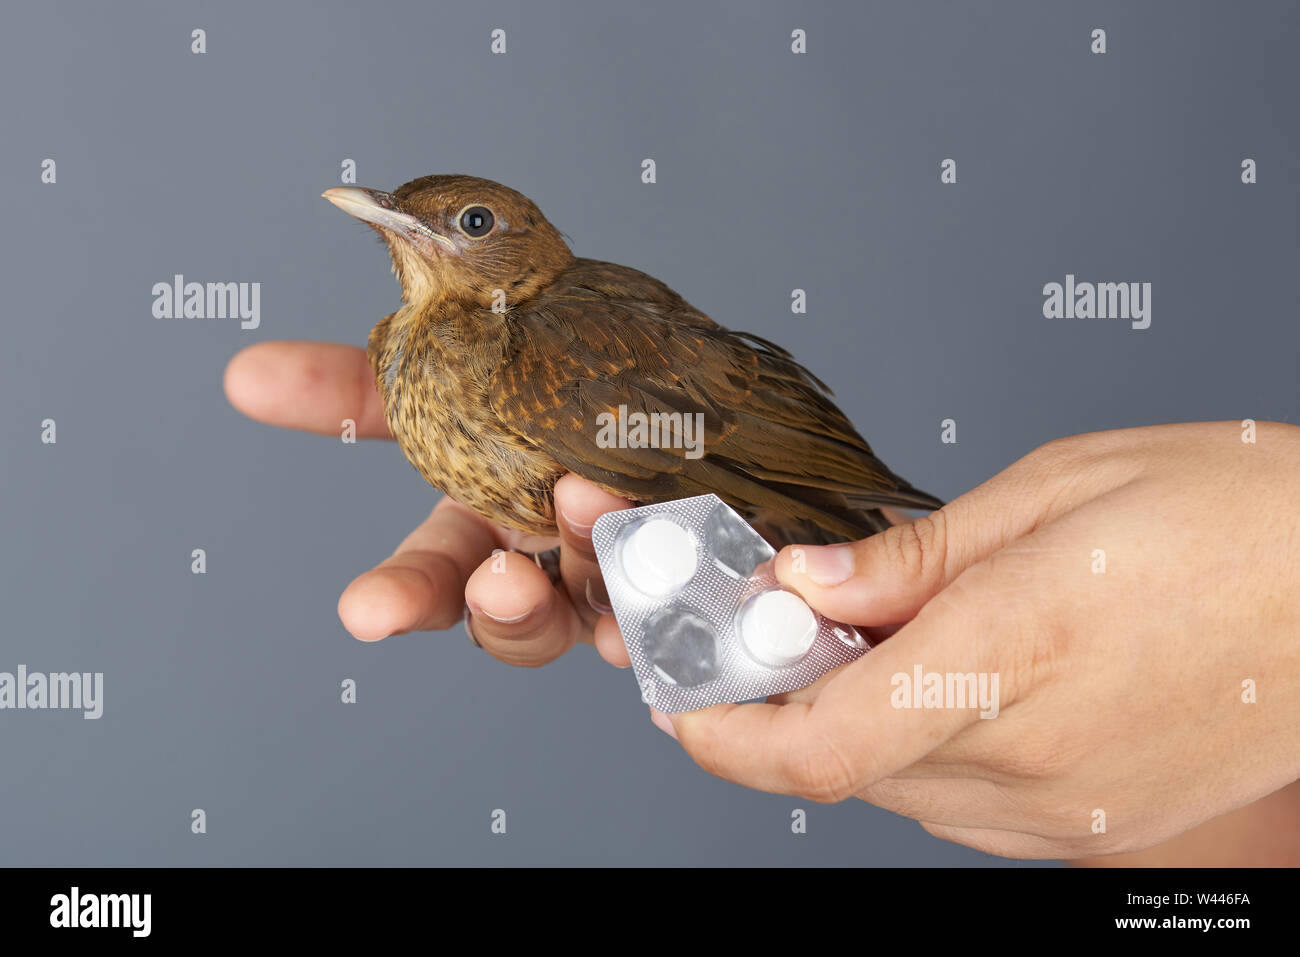 Dare pillole medicinali al piccolo uccello isolato su sfondo grigio Foto Stock